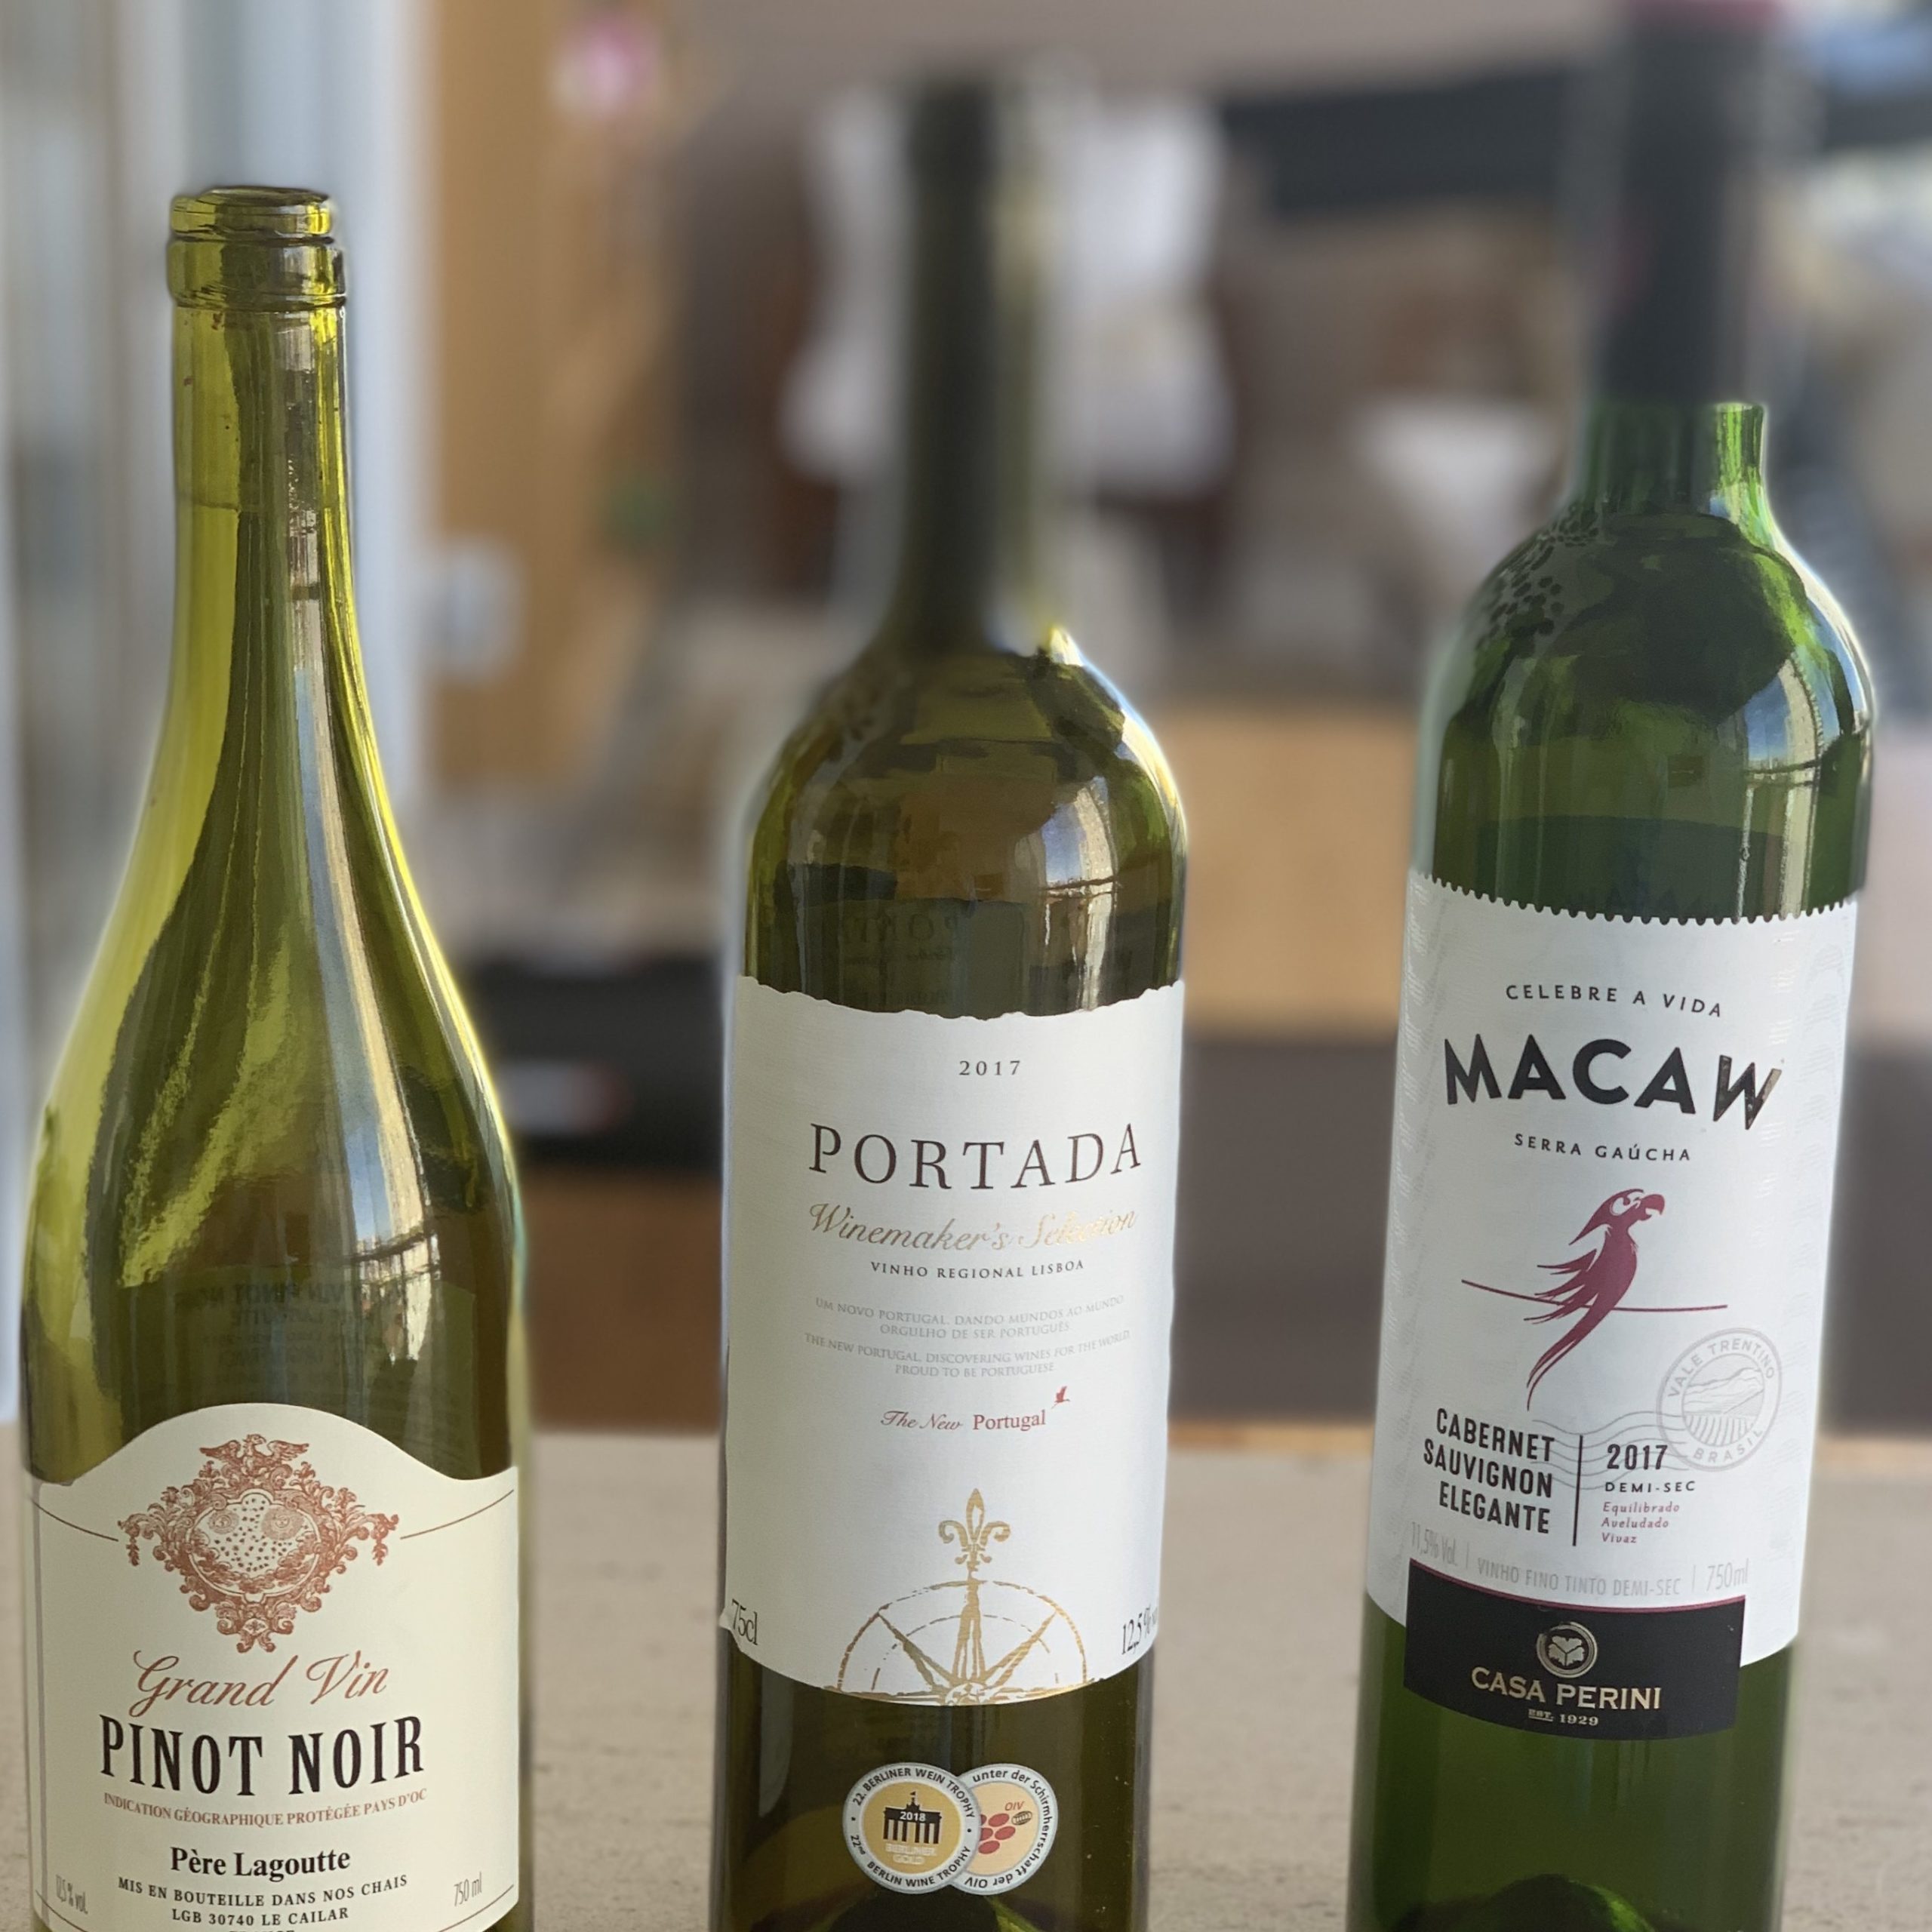 Dos tres o melhor vinho que achamos foi Vinho Père Lagoutte Grand Vin Pinot Noir 2017